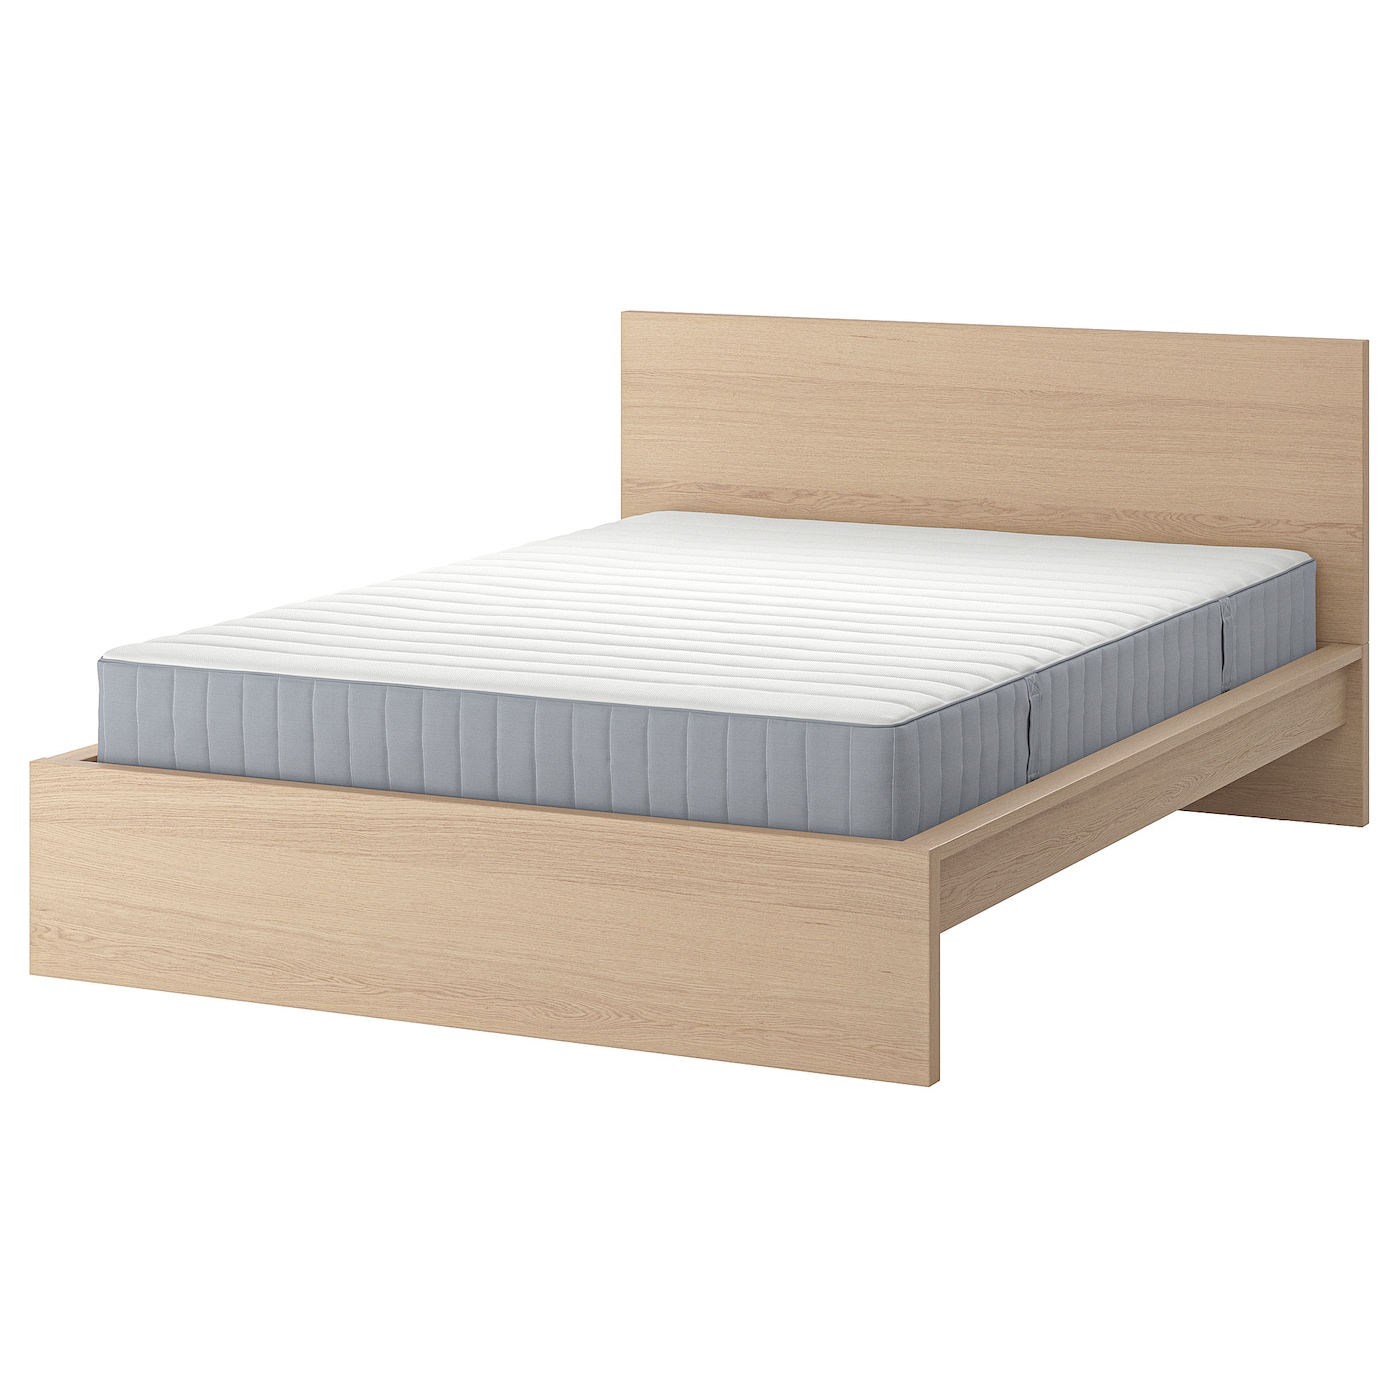 Кровать - IKEA MALM, 200х160 см, матрас средне-жесткий, под беленый дуб, МАЛЬМ ИКЕА